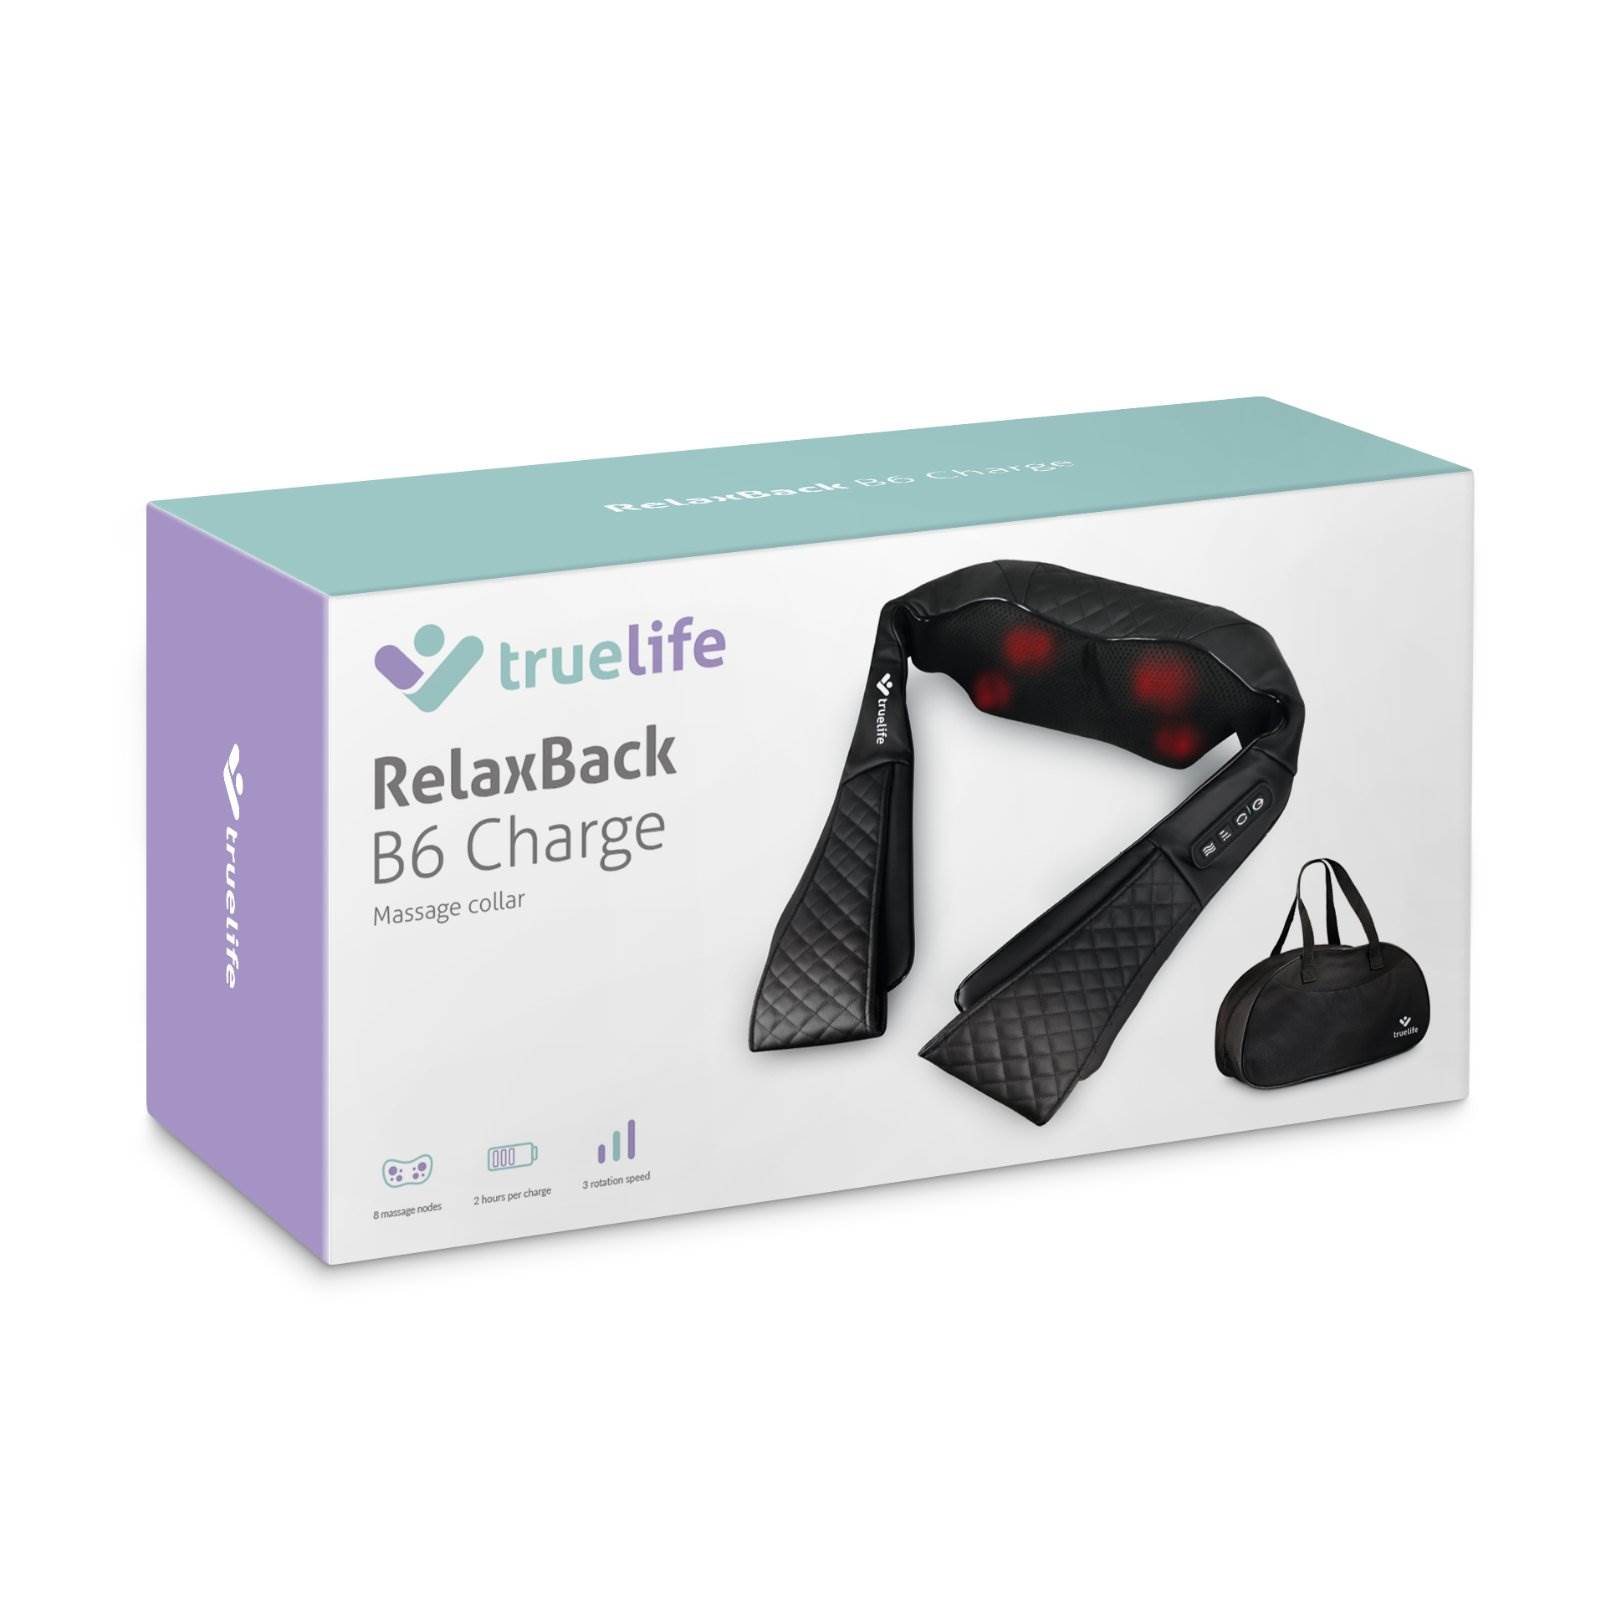 TrueLife RelaxBack B6 Charge - masážní límec s dobíjecí baterií9 